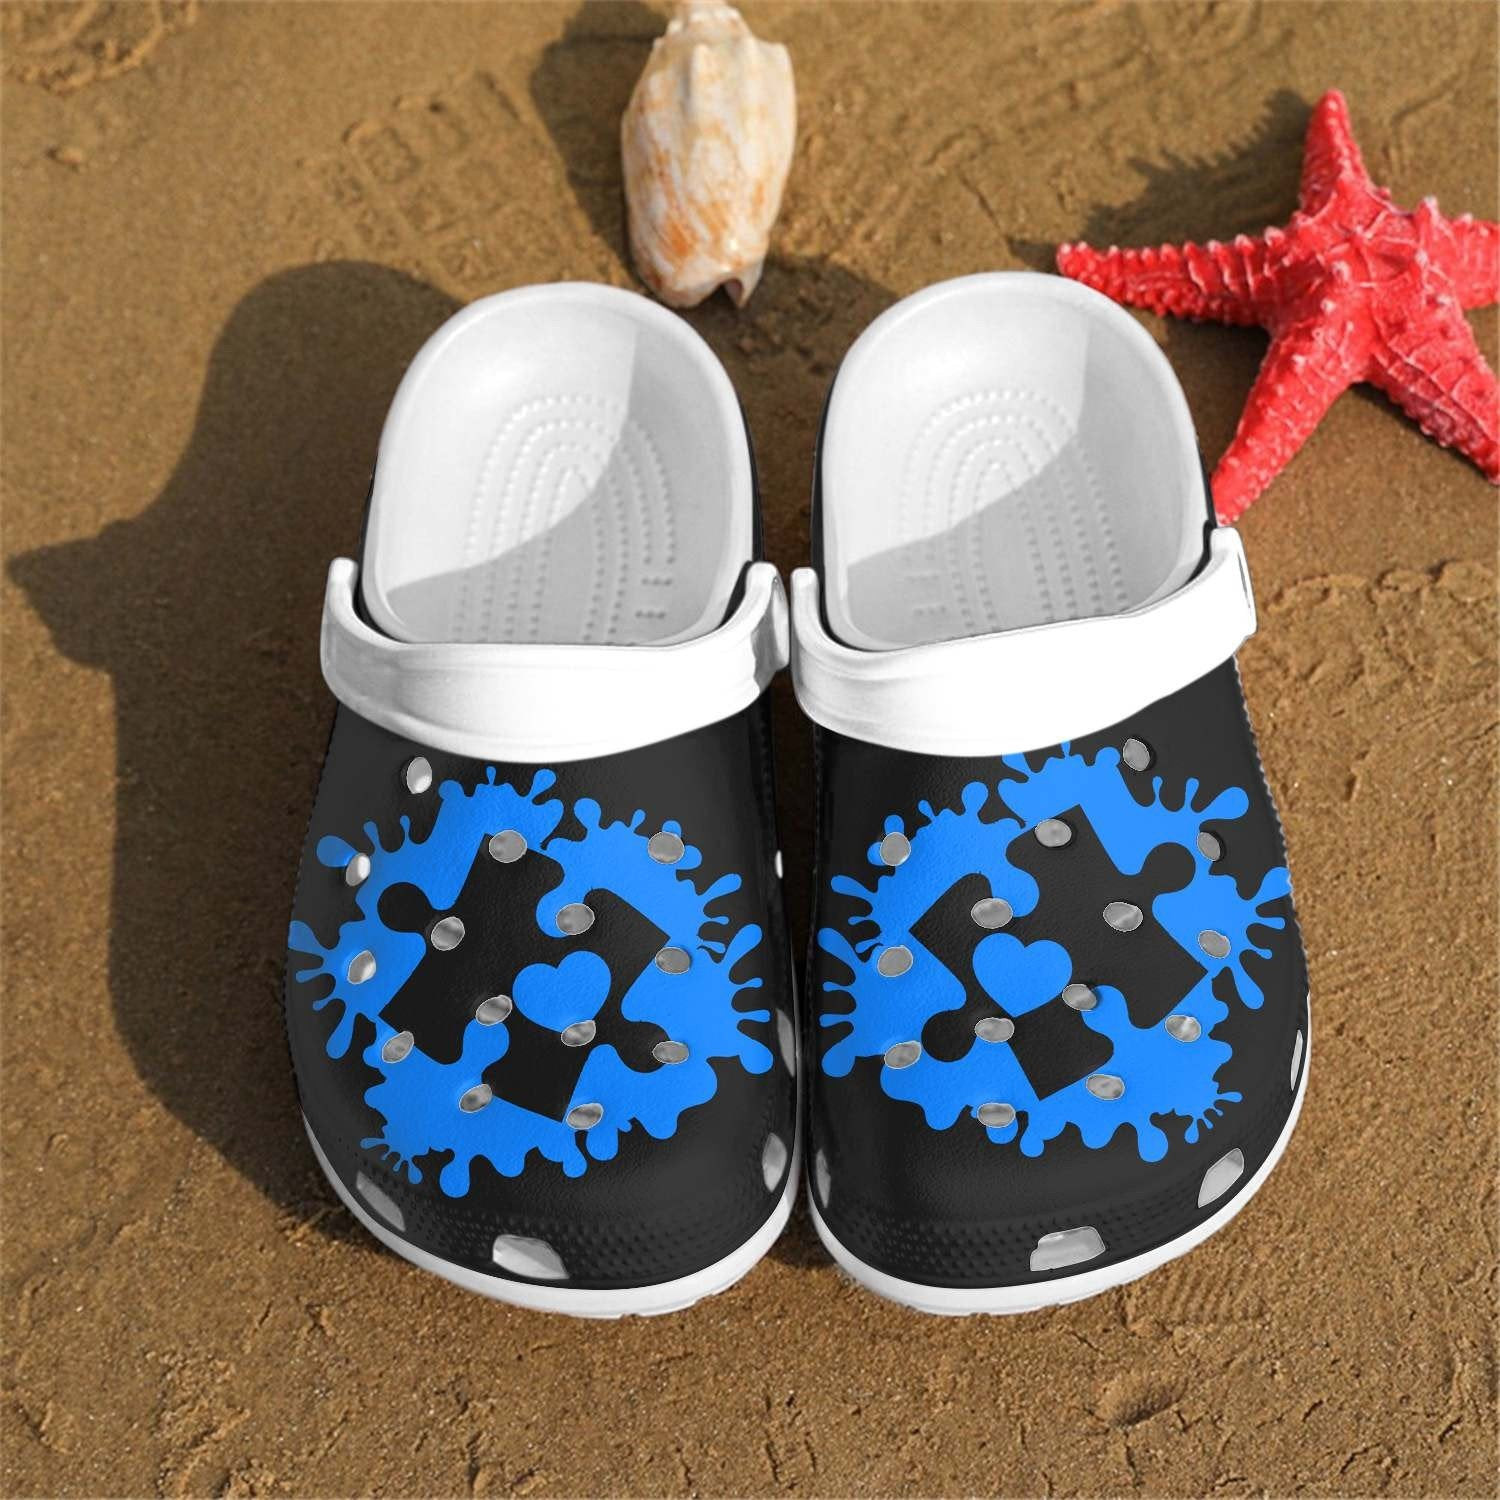 Blue Puzzle Crocs Shoes Clogs For Men Women - Autism Custom Crocs Shoes Clogs Gifts